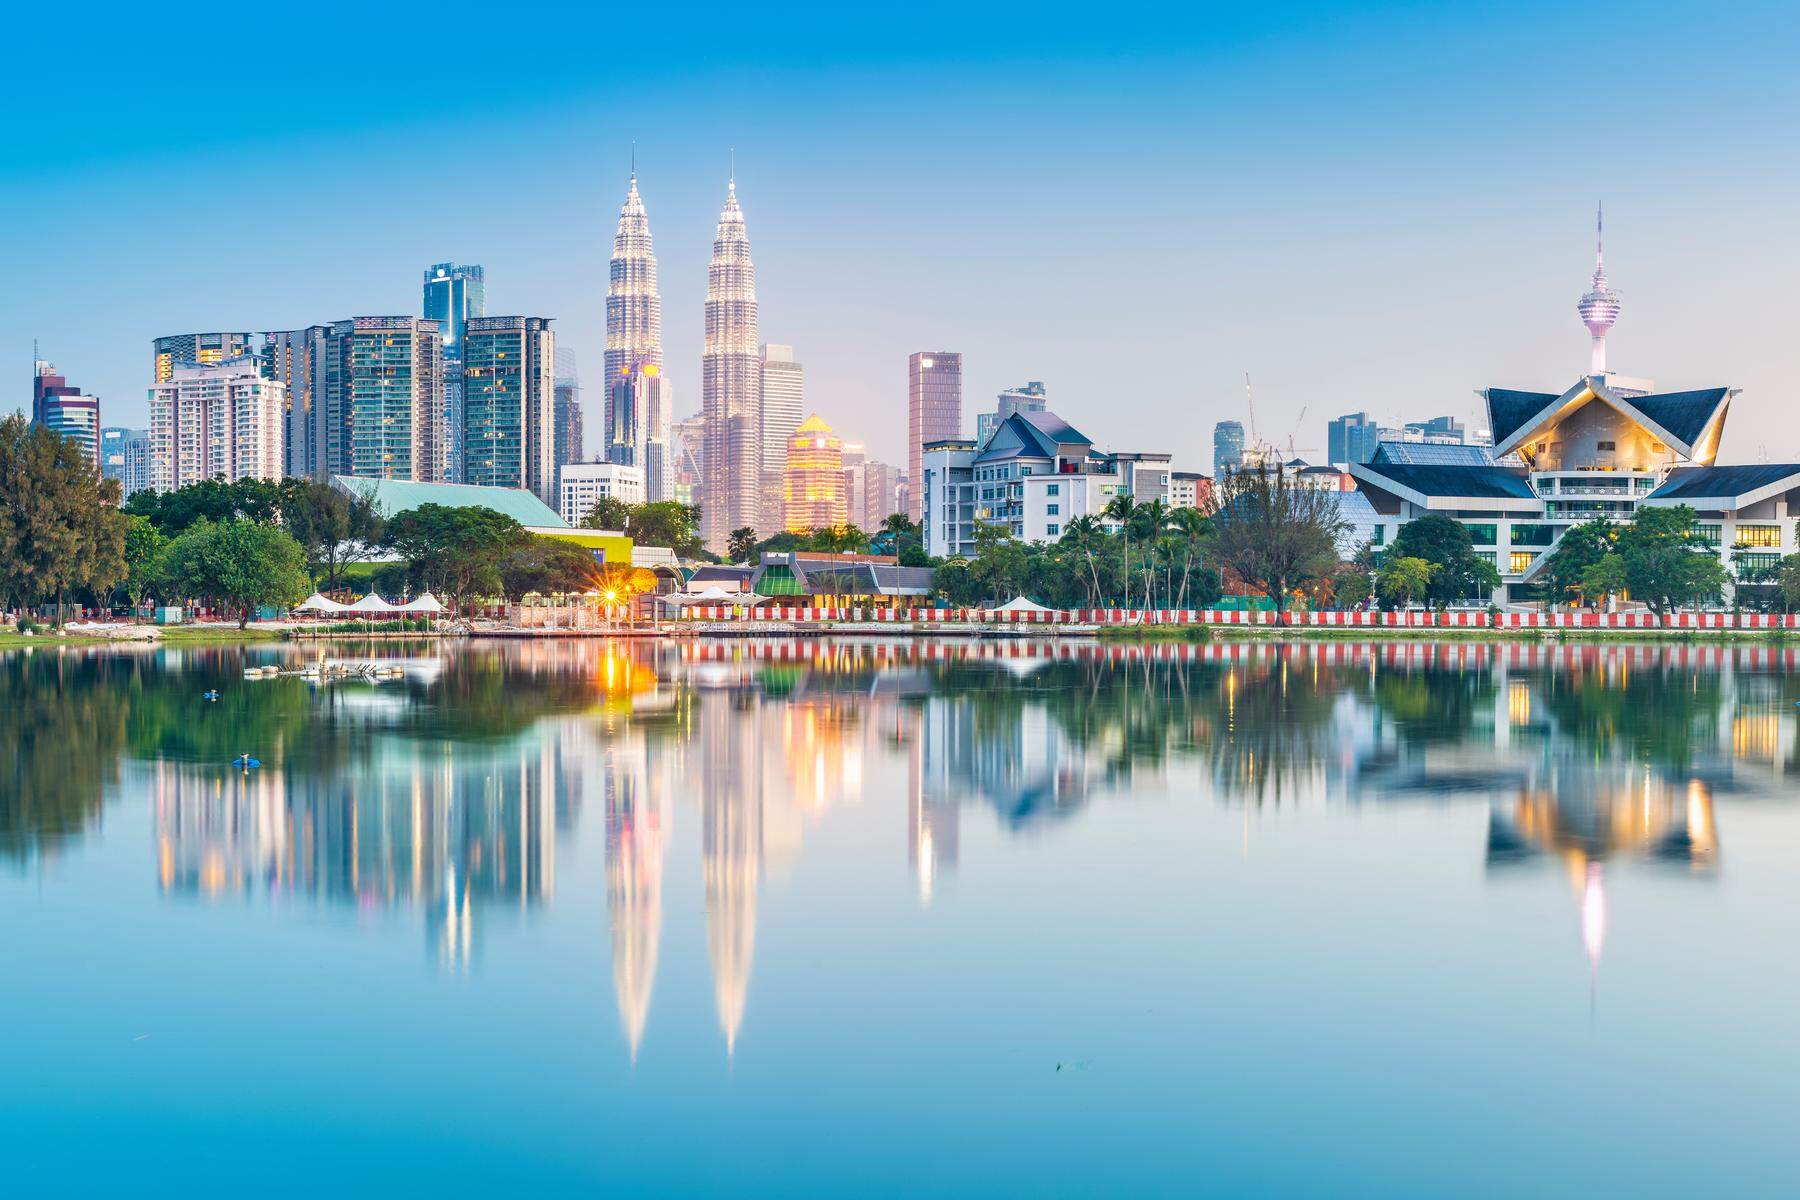 48 Stunden in: Was man in Kuala Lumpur nicht verpassen darf